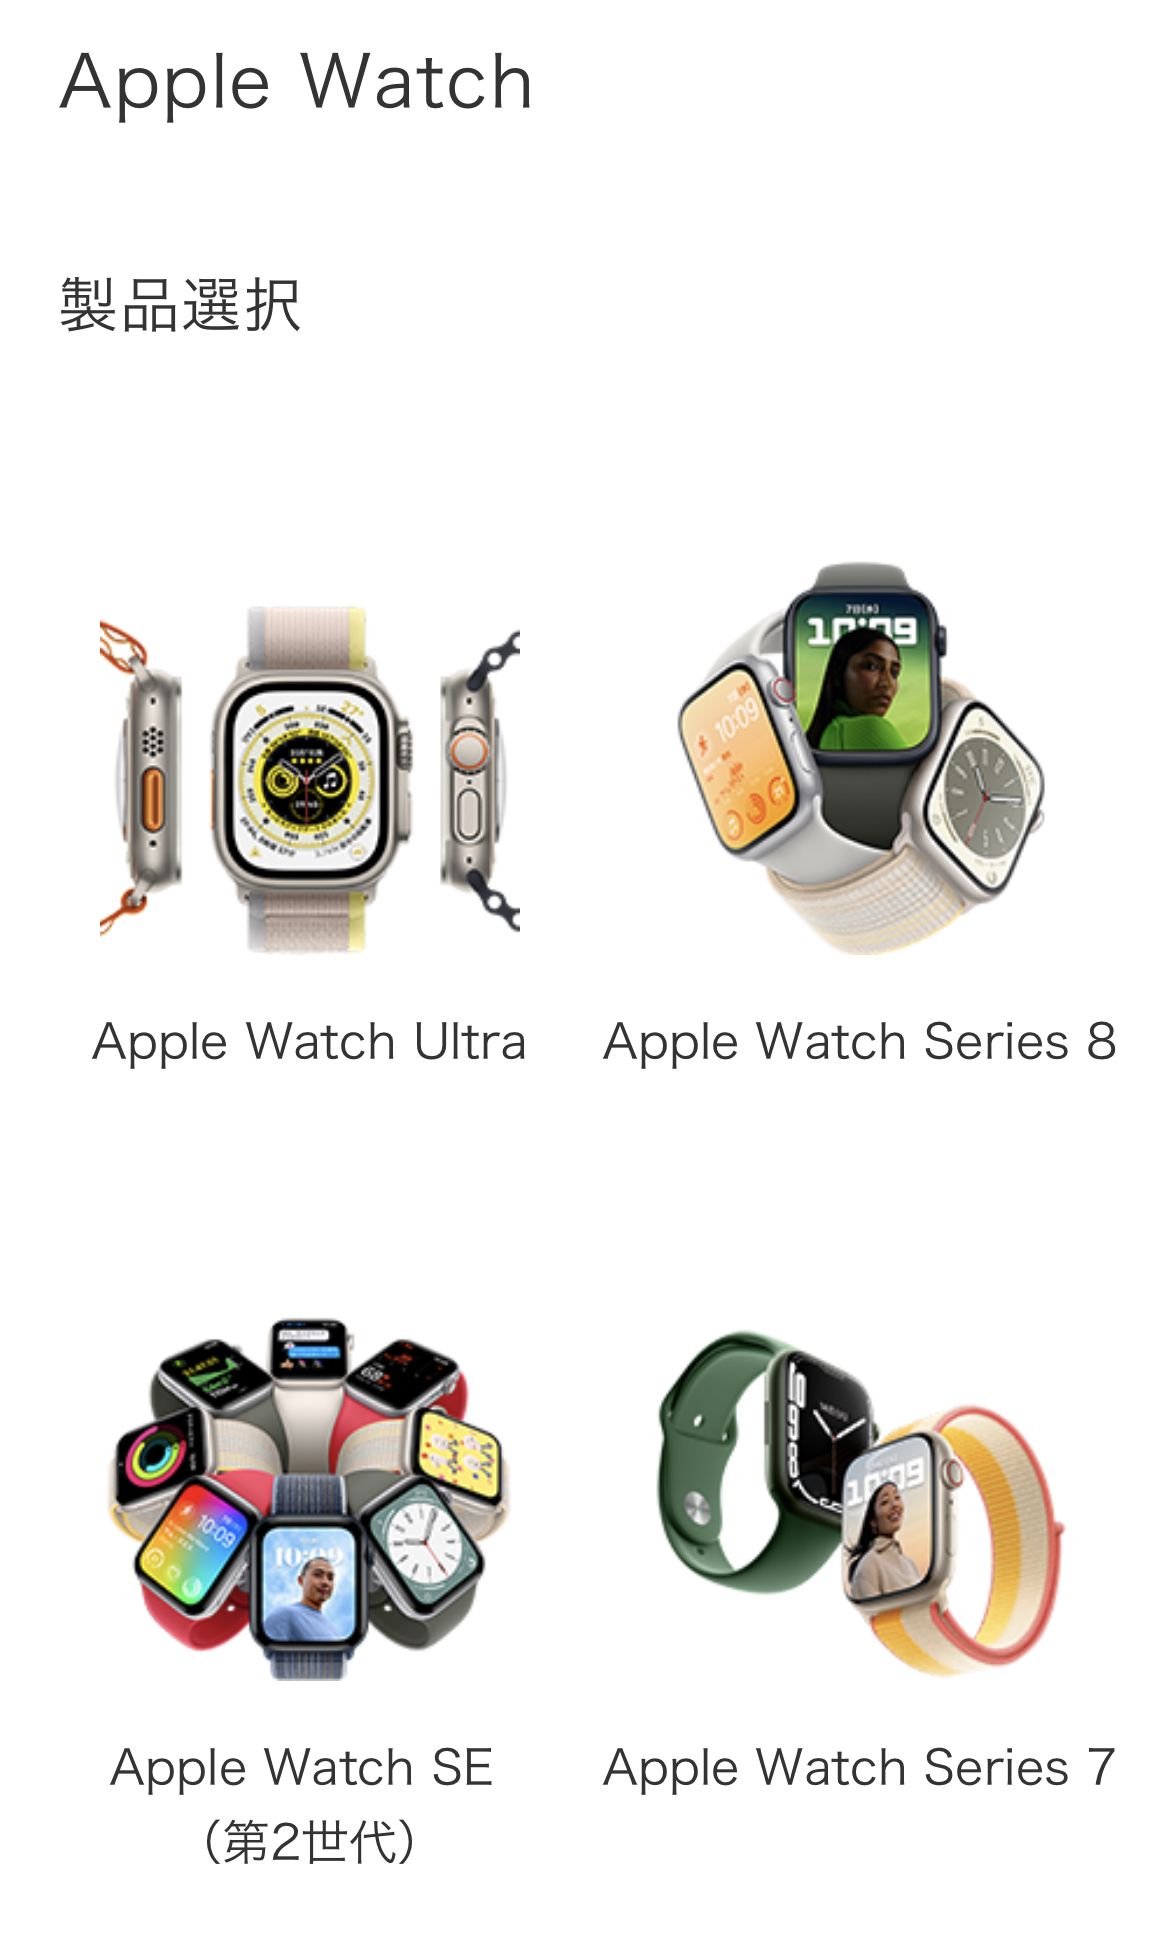 ドコモオンラインショップ Apple Watch申込み手順